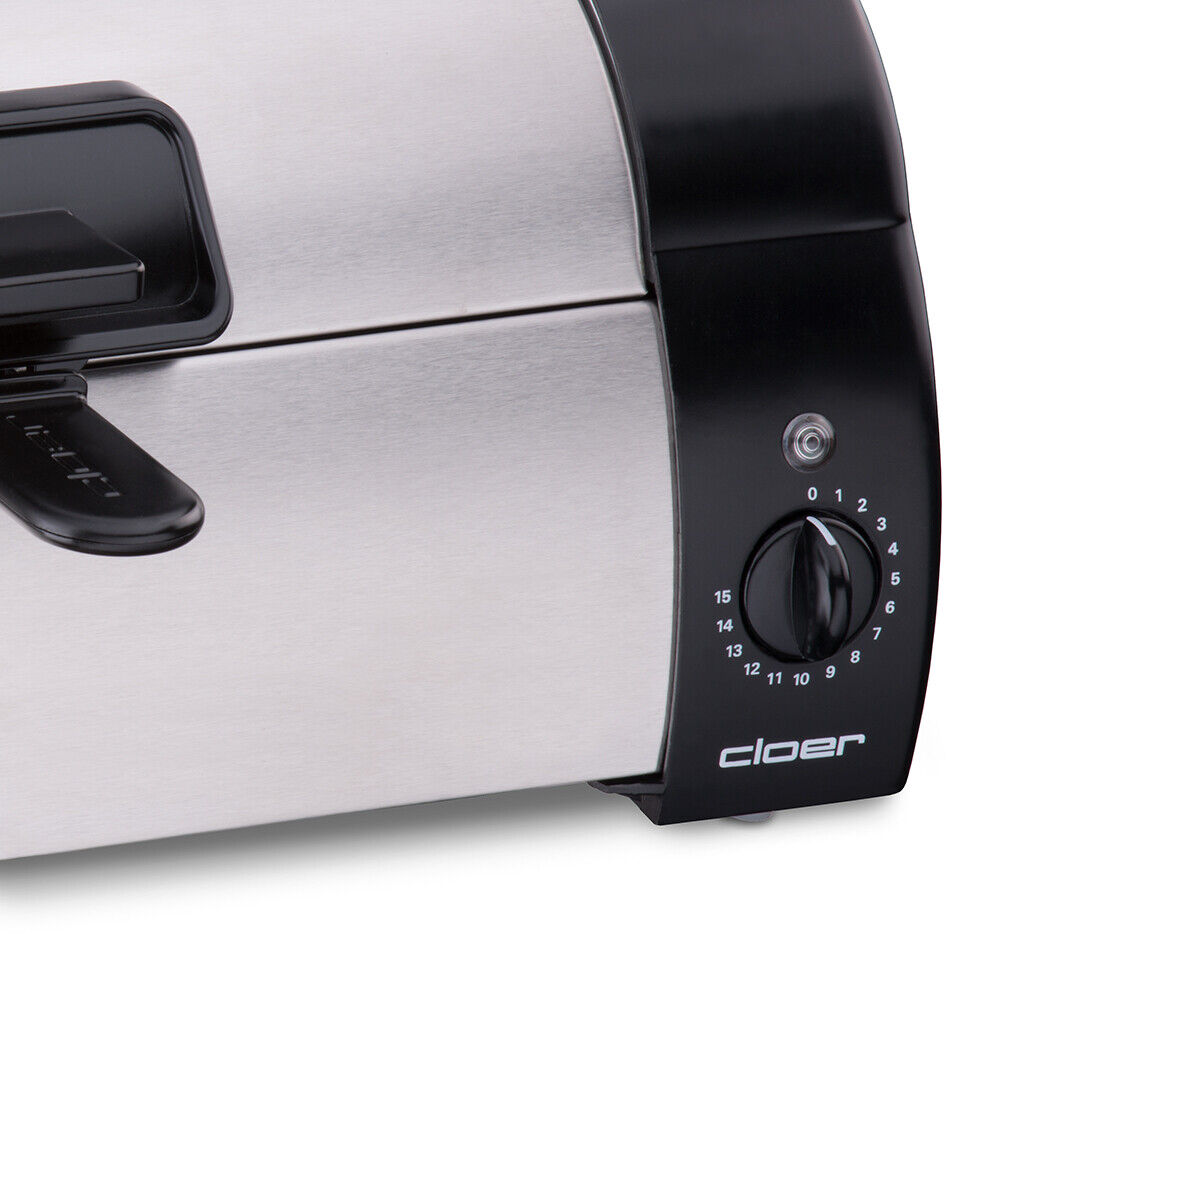 Brötchenbäcker Cloer-3080 Toaster zum Aufbacken Überbacken Energie sparen